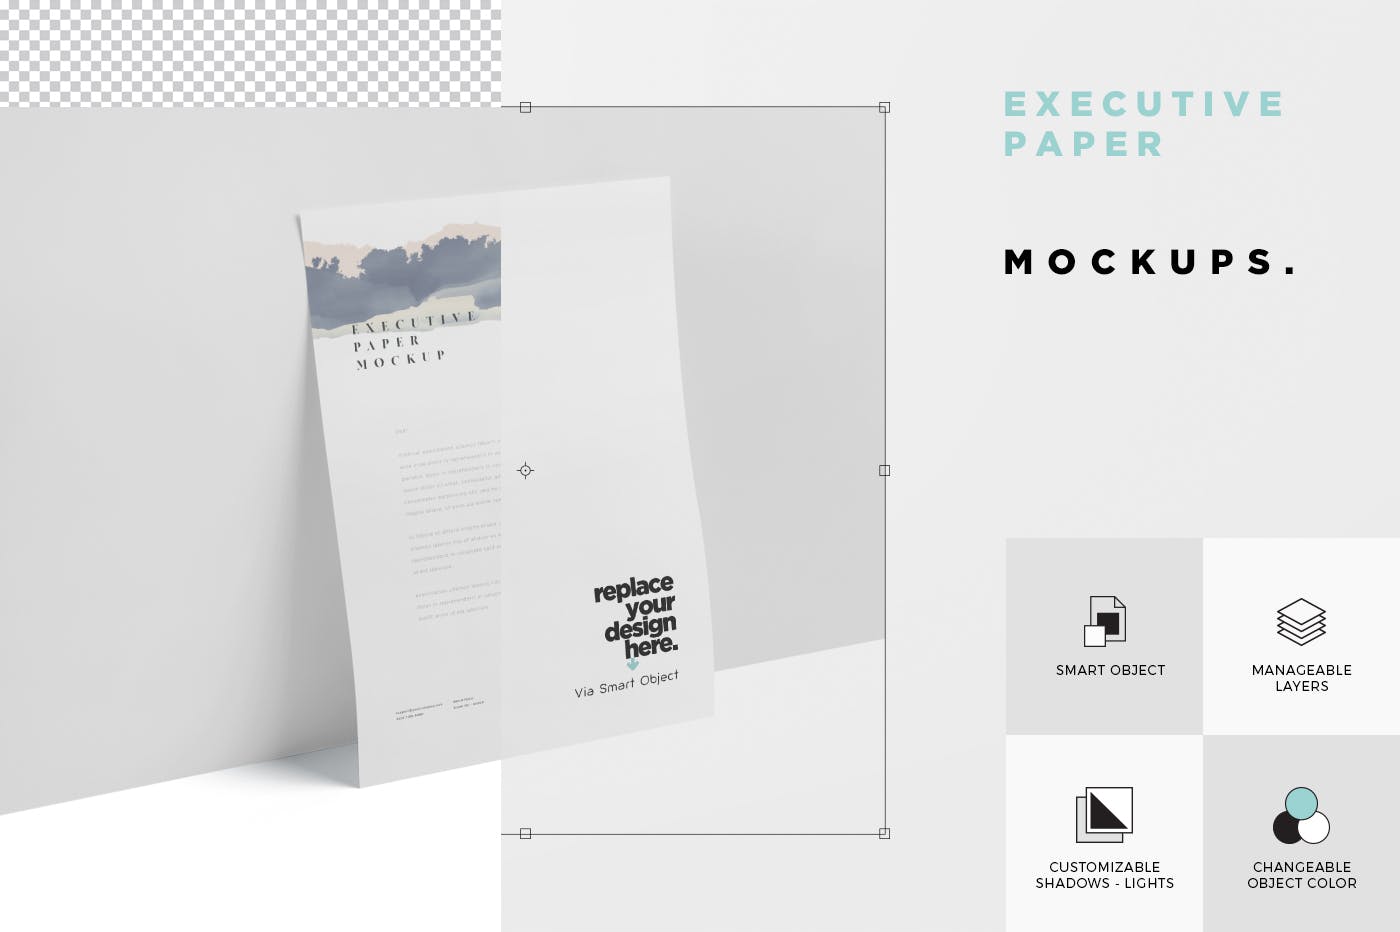 企业宣传单张设计效果图样机第一素材精选 Executive Paper Mockup – 7×10 Inch Size插图(5)